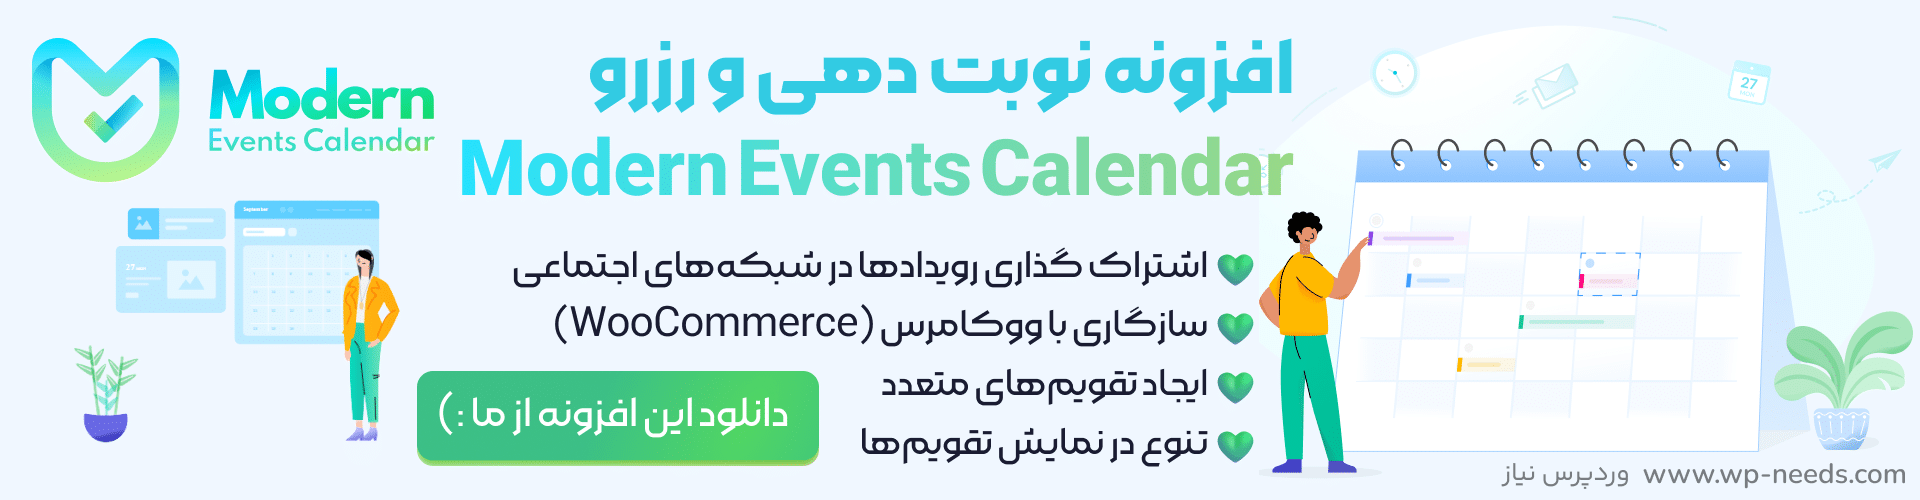 دانلود افزونه Modern Events Calendar